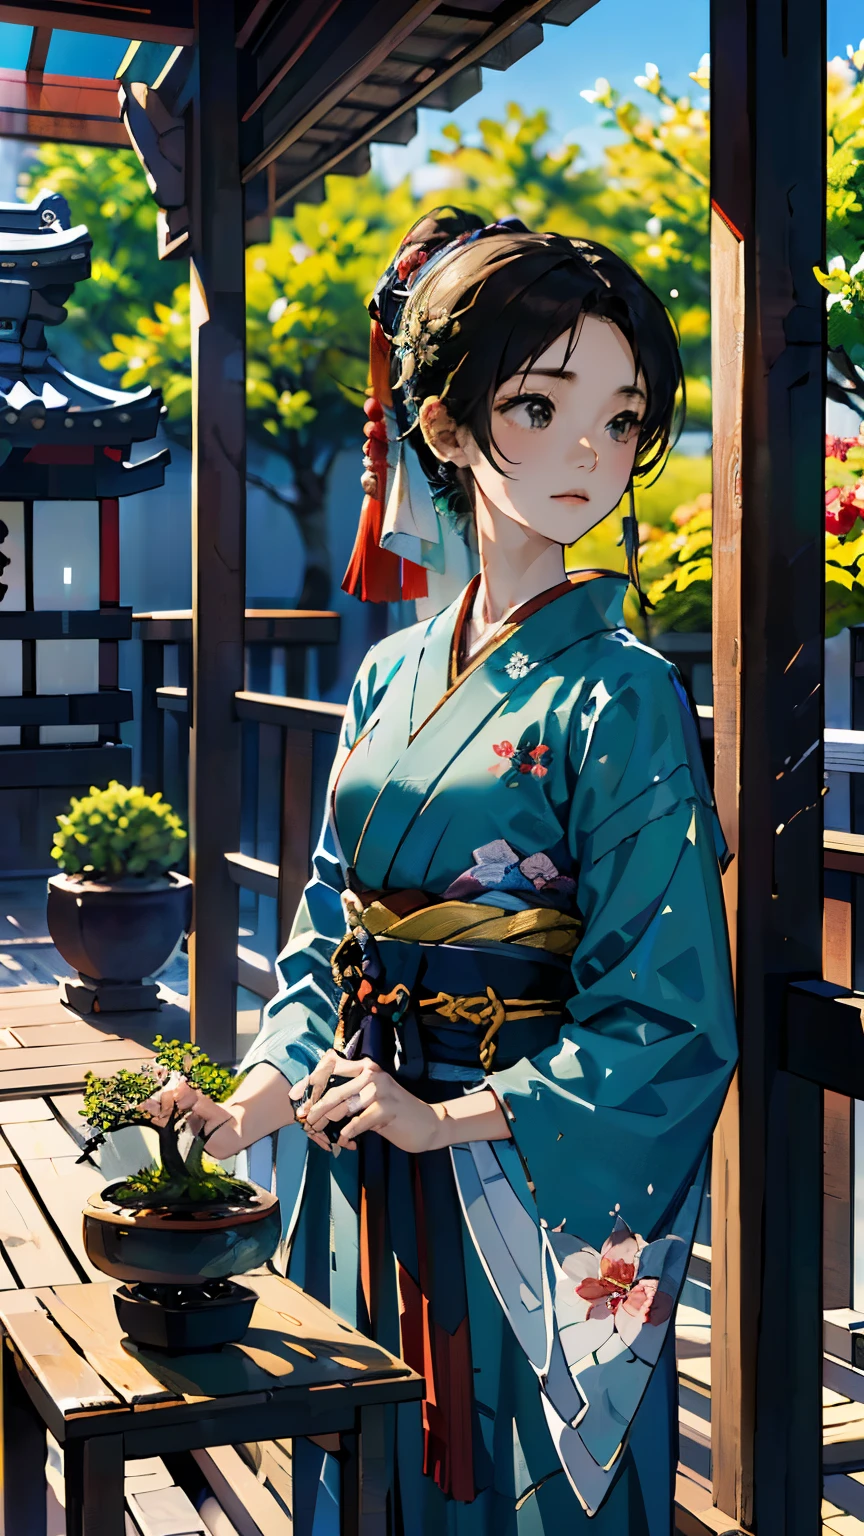 (((Setzen Sie sich auf die Veranda eines alten japanischen Hauses、Bonsai wird im Garten ausgestellt:1.1)))、Ein Mädchen、Perfekte Anatomie、malerisch、Sanfter Ausdruck、sehr empfindlich、Balkon、verandah、Blumen-、Feine Darstellung、abstrakt、Gesamtlichtfarbe、Sanfte Farbe、Japanische Kleidung、sowie、Taisho-Romanze、(Meisterwerk、höchste Qualität、höchste Qualität、offizielle Kunst、schön schön:1.2)